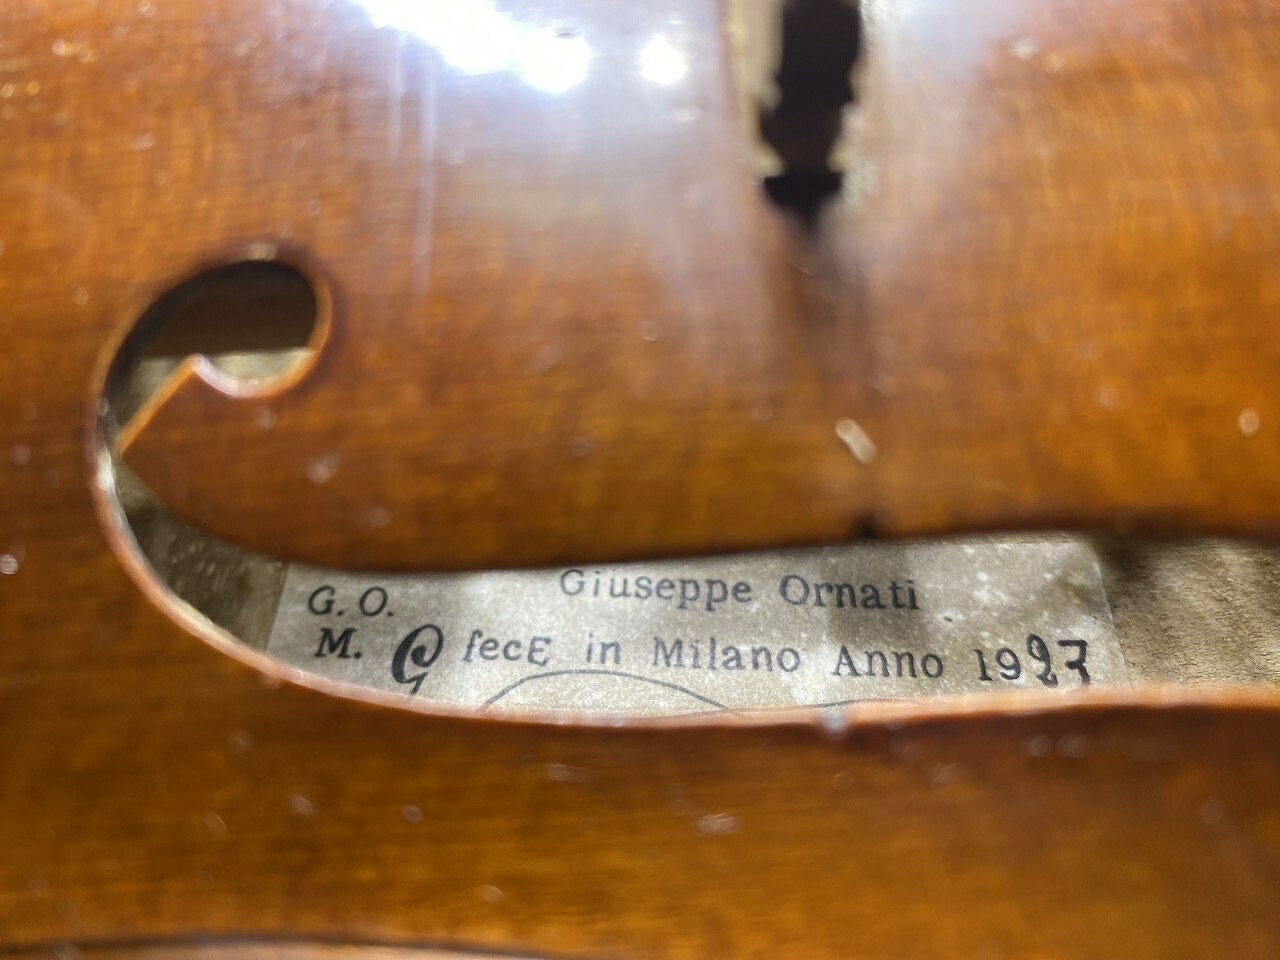 イタリアンラベル　Giuseppe Ornati 1923 ラベル： Giuseppe Ornati fece in Milano Anno 1923 楽器は日本にありますので、直ぐに発送できます。 状態は非常によく、甘美な音色を出すヴァイオリンです。その至福の音色はそれを弾き出すことのできるバイオリニストに値する価値のあるものです。 委託販売分の楽器で現在のオーナーは英国在住のイギリス人です。鑑定書はありませんので、真贋の証明はできません。ラベルドということでご理解お願いします。英国人の友人、ニックが所有している楽器です。（彼は演奏の腕も素晴らしく、クレモナのみならず欧州・北米各地にコネクションがあるディーラーでもあります。）鑑定書はありませんので、真贋の証明はできません。ラベルドということでご理解お願いします。